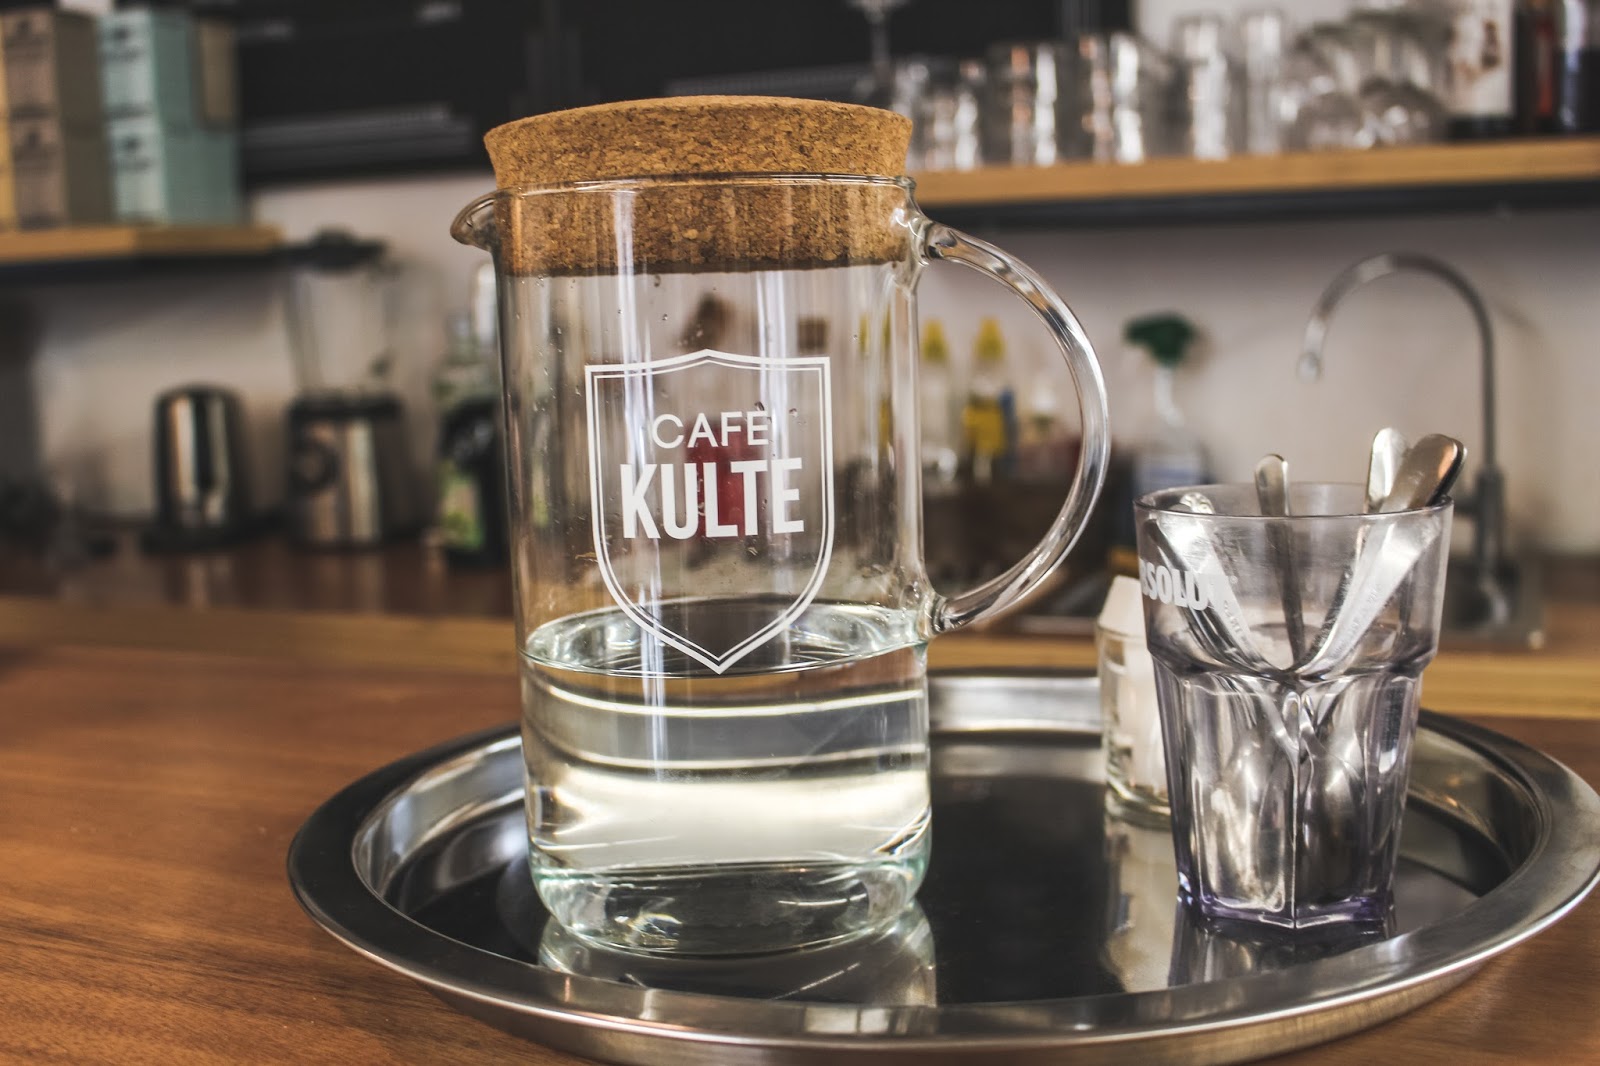  Café Kulte Marseille